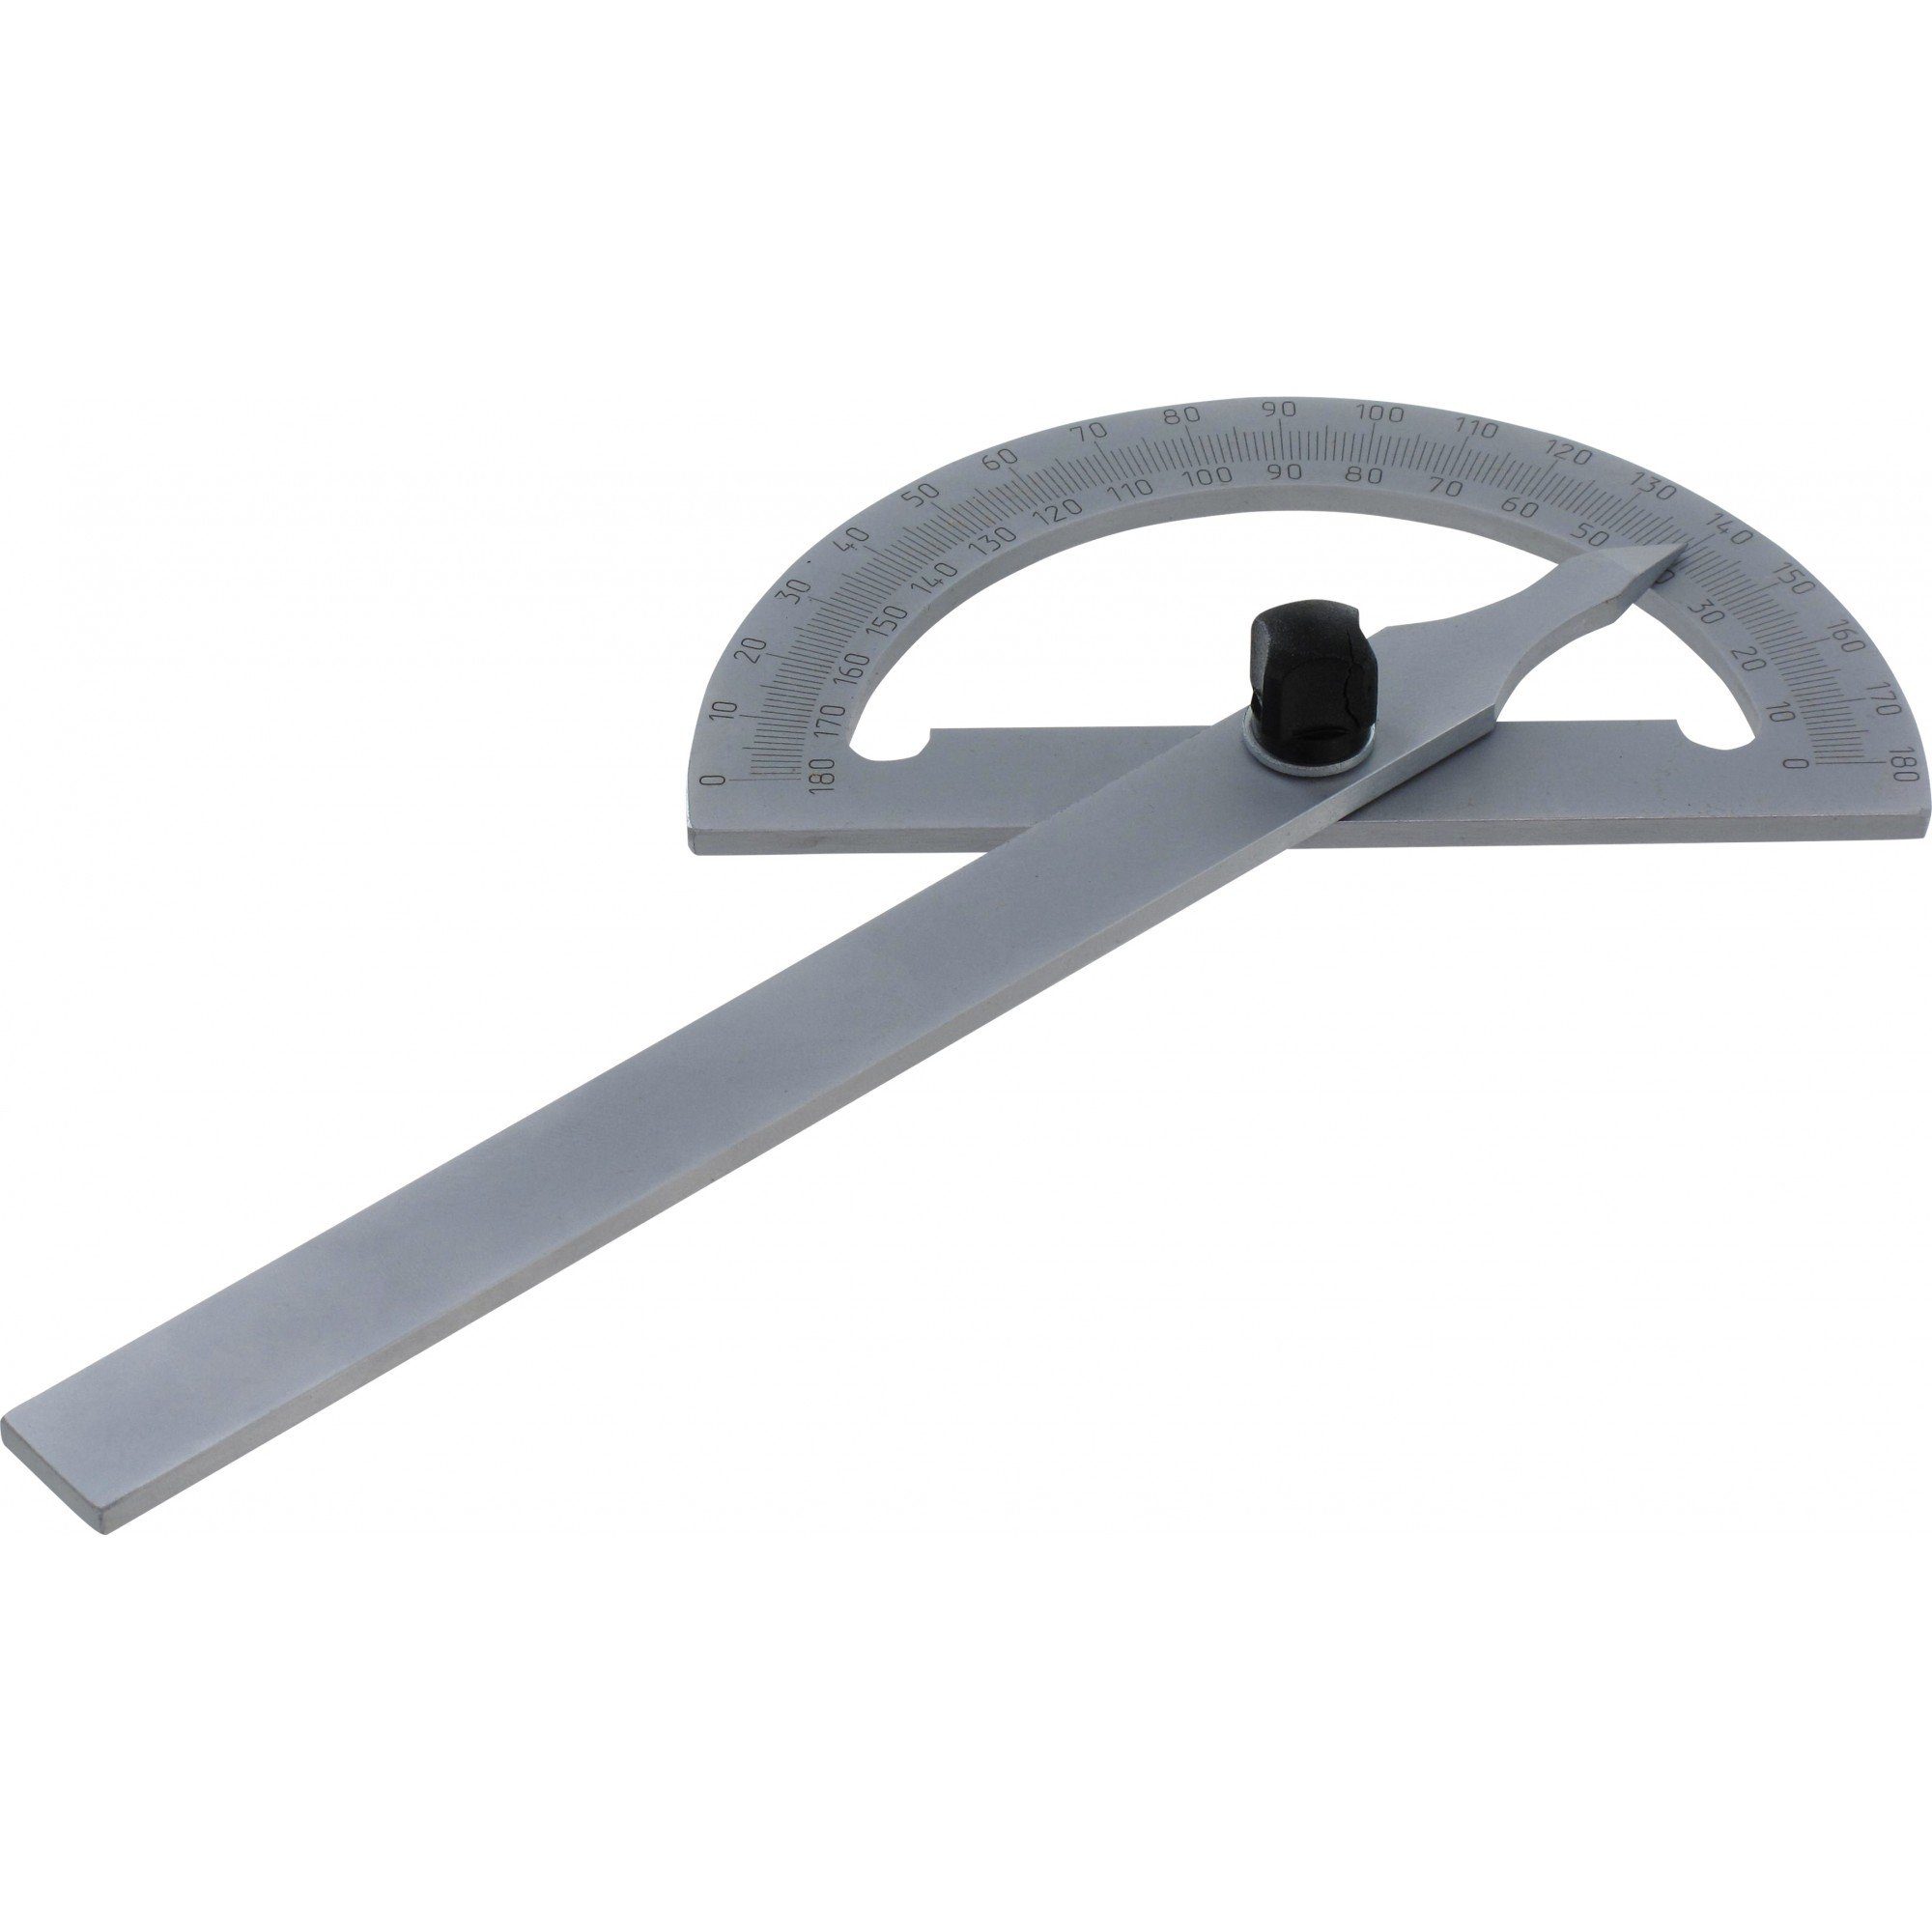 Triuso Winkelmesser Gradmesser einstellbarer Winkel 120 mm, (Ablesung 0-180 Grad), für den allgemeinen Maschinenbau geeignet